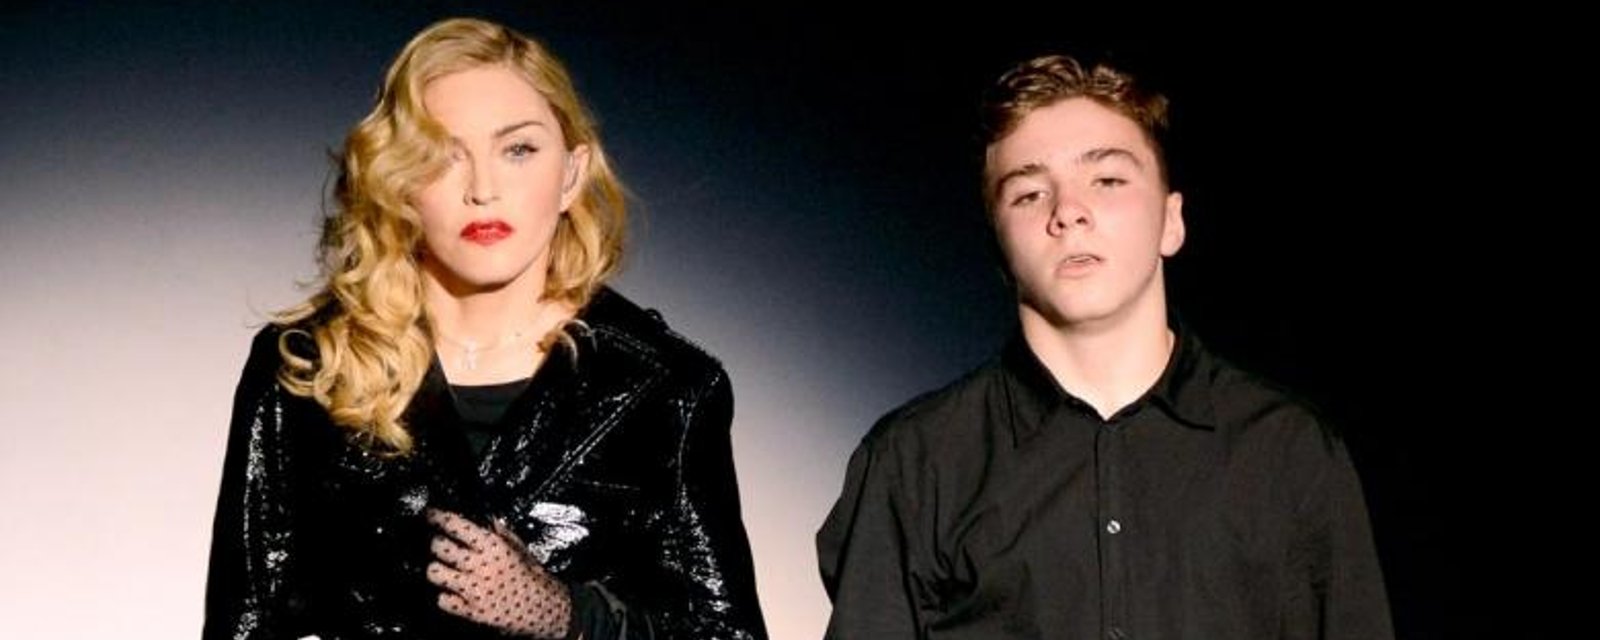 Le fils de Madonna humilie et insulte sa mère publiquement...